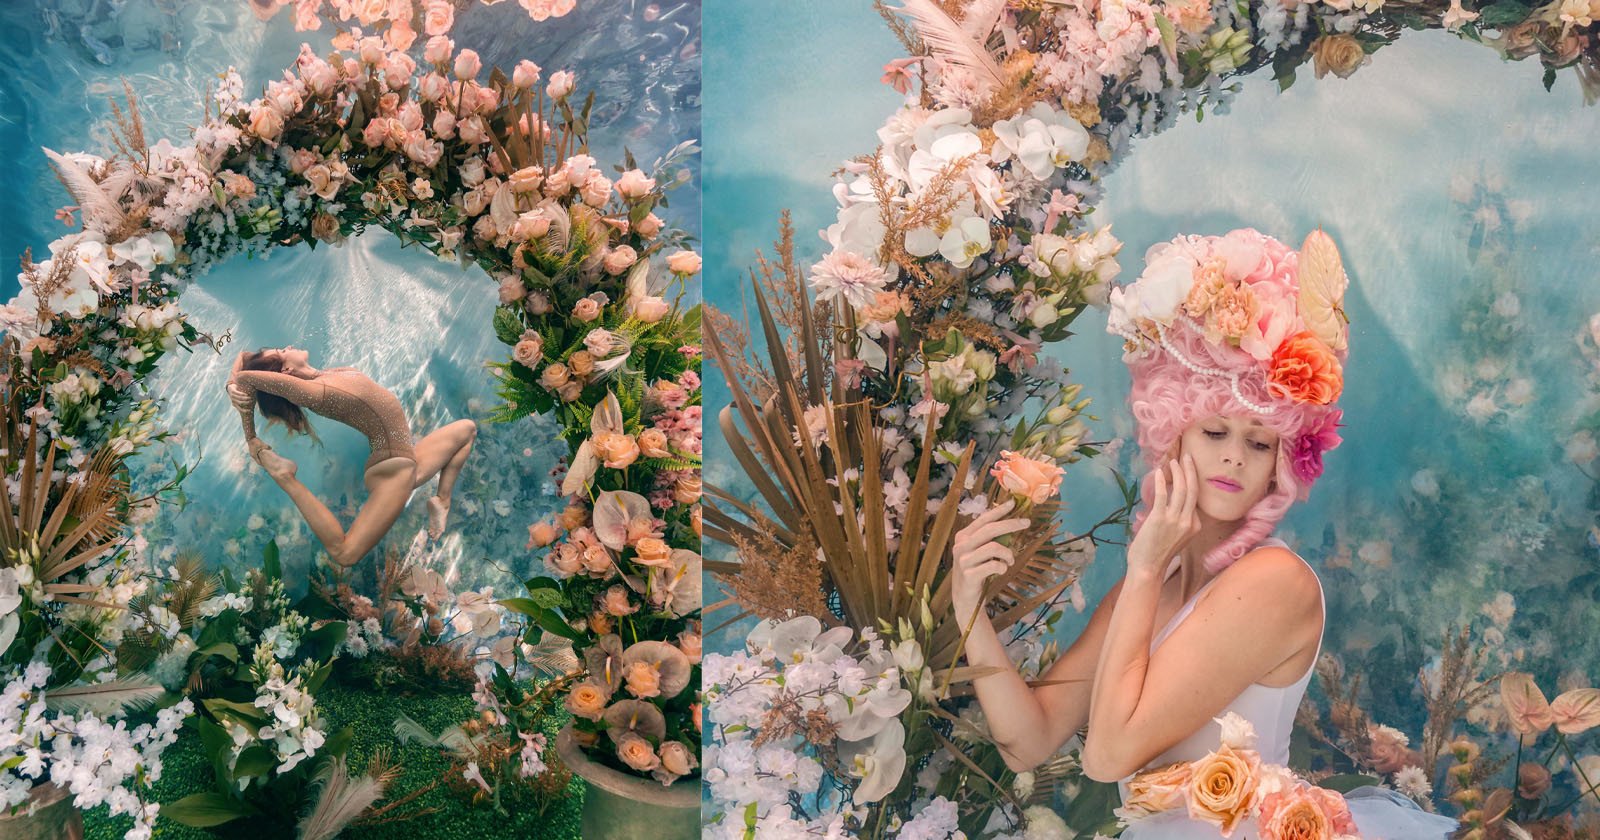 Gorgeous Underwater Garden Photo Shoot is ‘Bridgerton Meets Coral Reef’